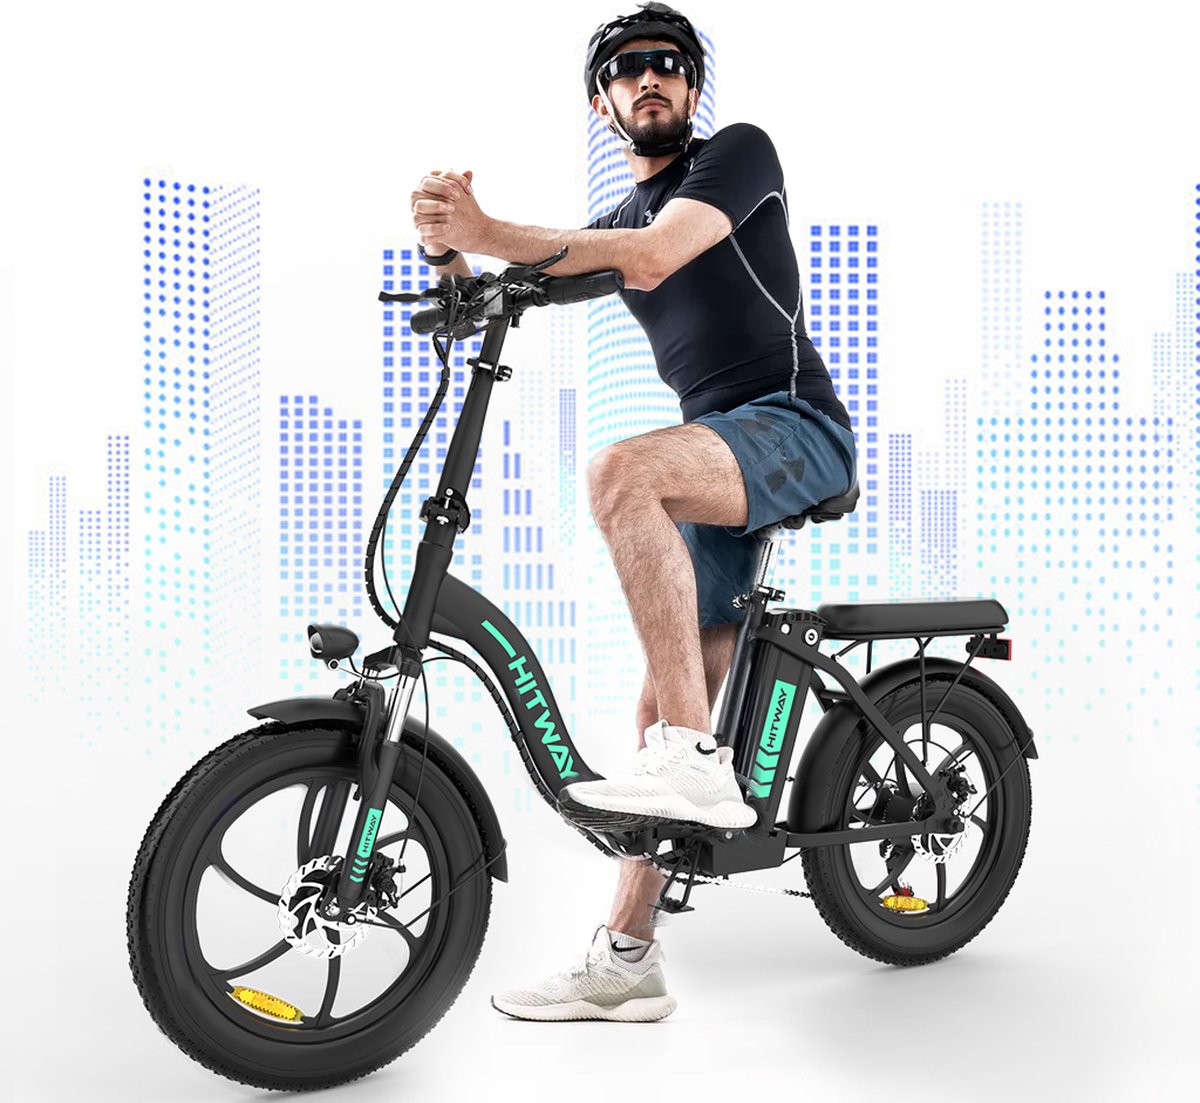 HITWAY E-Bike Elektrische Fiets 20 Inch Fat Tire E-Bicycle Vouwfiets, 250 W, 11,2 Ah Accu, Max. Bereik tot 35-90 km, offroad-mountainbike met Shimano 7-versnellingen, City EBike met slot,Groen zwart